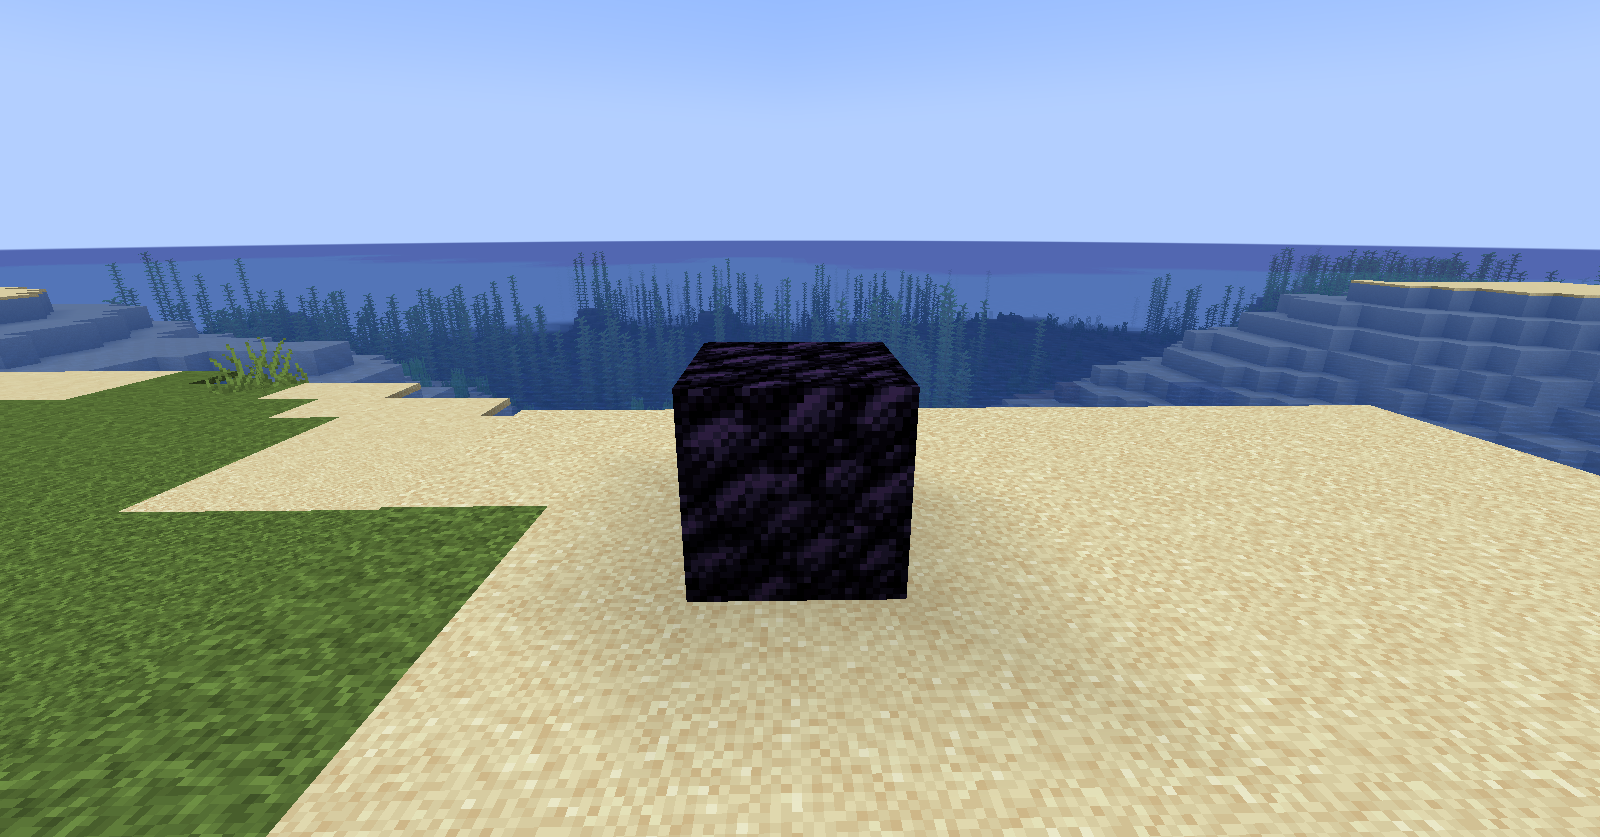 An obsidian